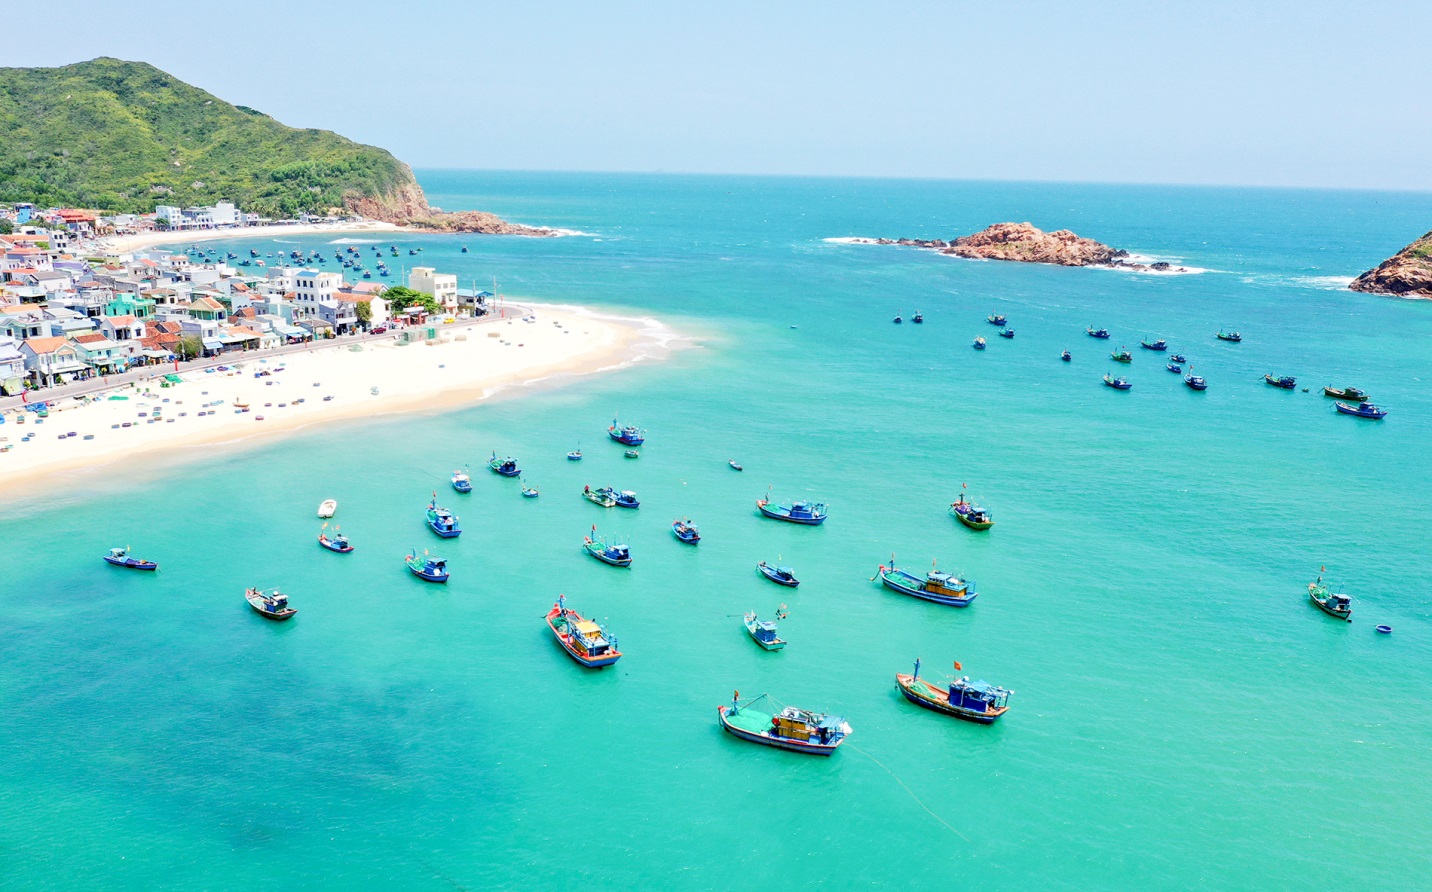 Eo biển thơ mộng quyến rũ du khách dọc bờ biển Bình Định - 5